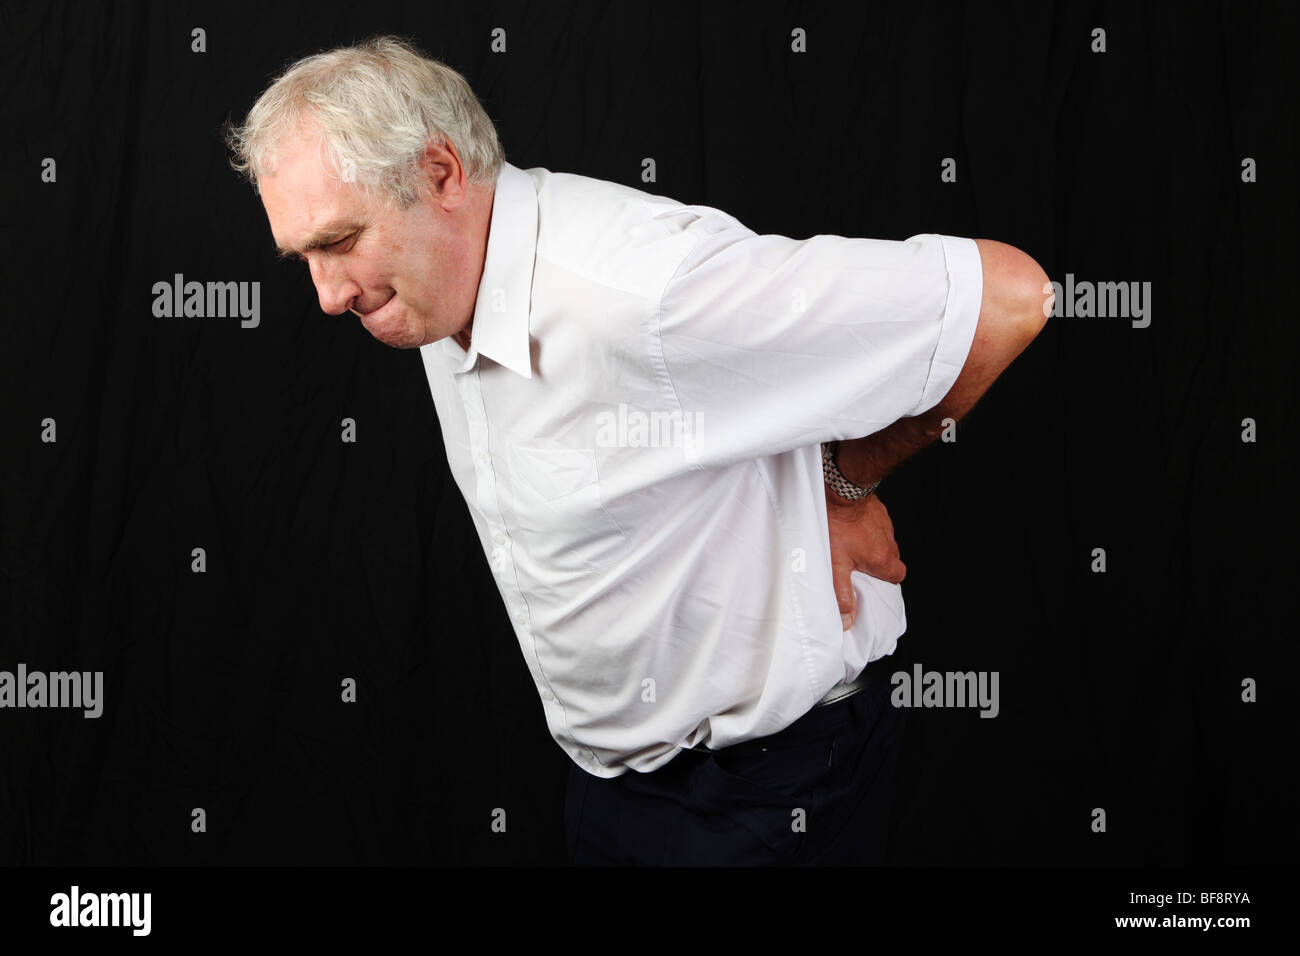 Im späten Mittleren Alter 50er Jahre 60er Jahre Mann Hand in Hand am unteren Rücken leiden mit schweren unteren Rückenschmerzen Bandscheibenvorfall Bandscheibe Problem Stockfoto